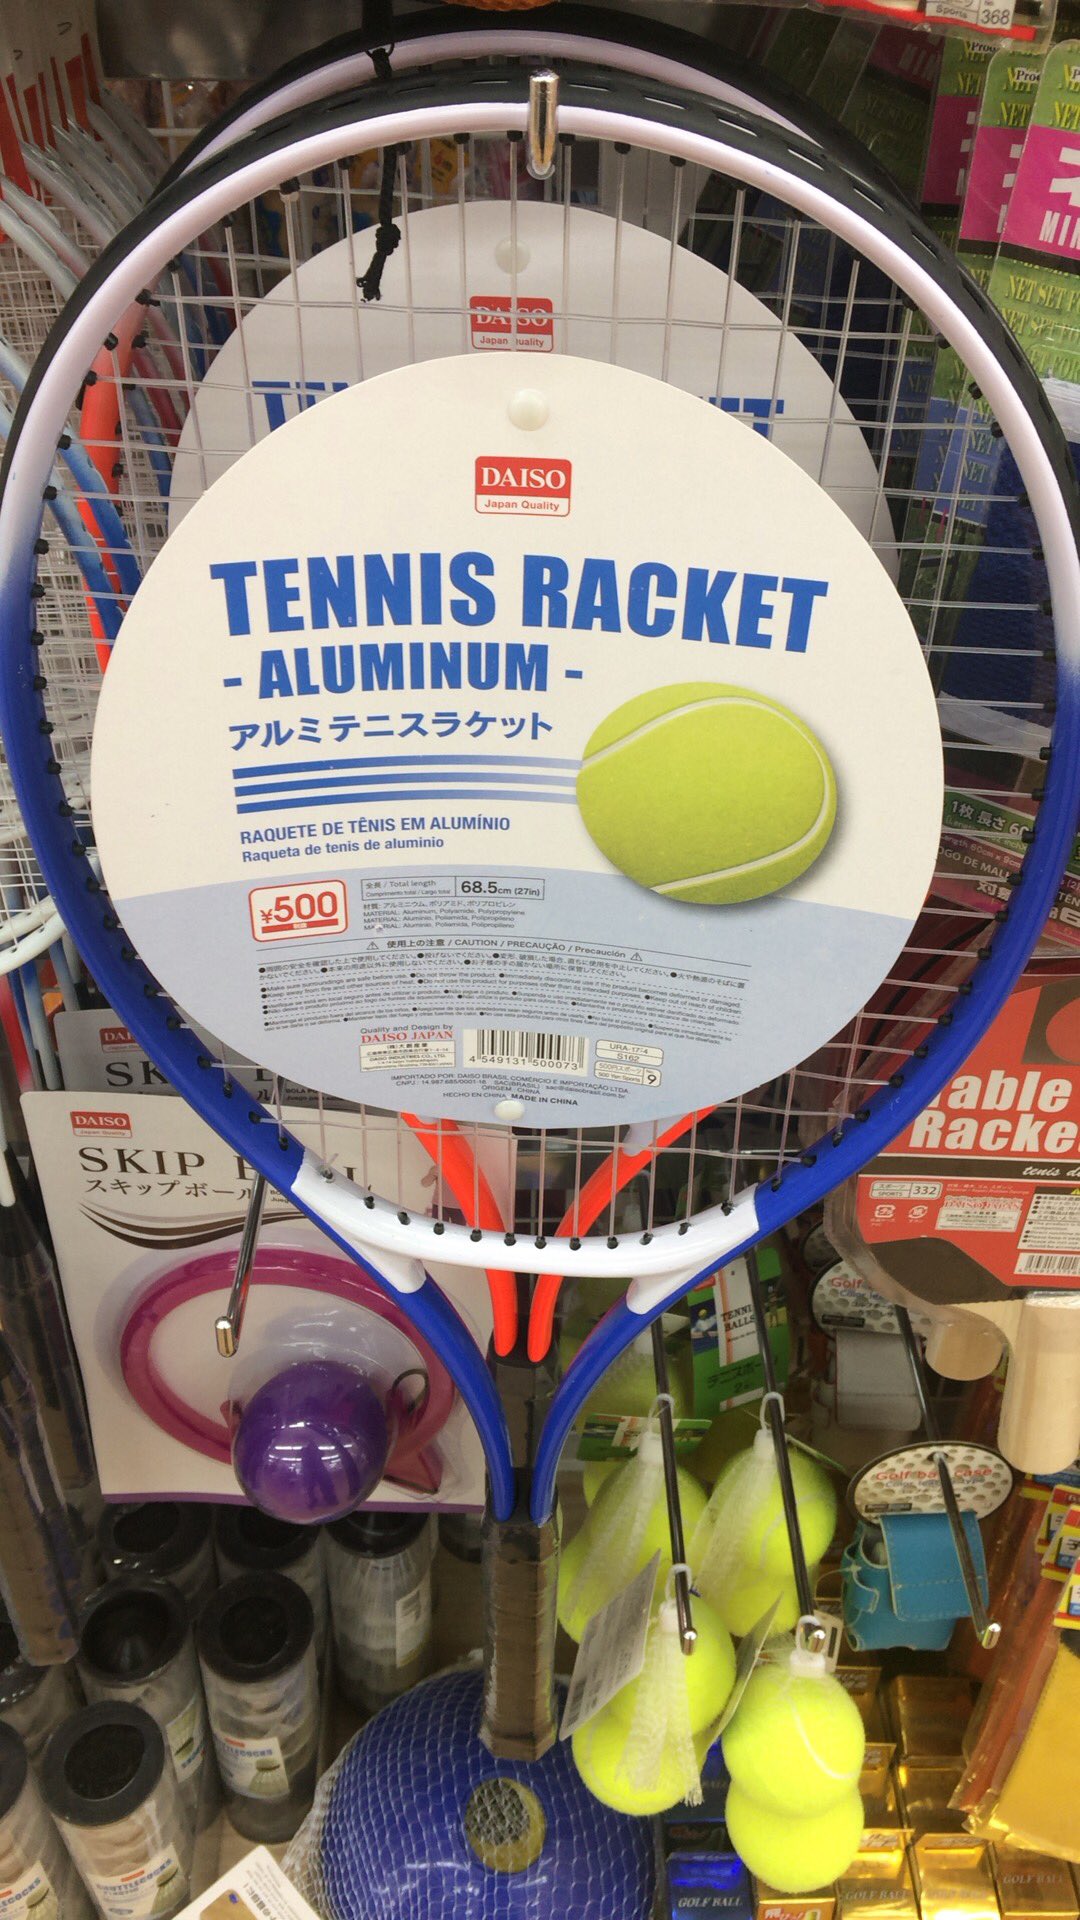 ガルー ダイソーで硬式テニスラケットを発見 テニス始めようかな ダイソー T Co Pjfr6olxz9 Twitter